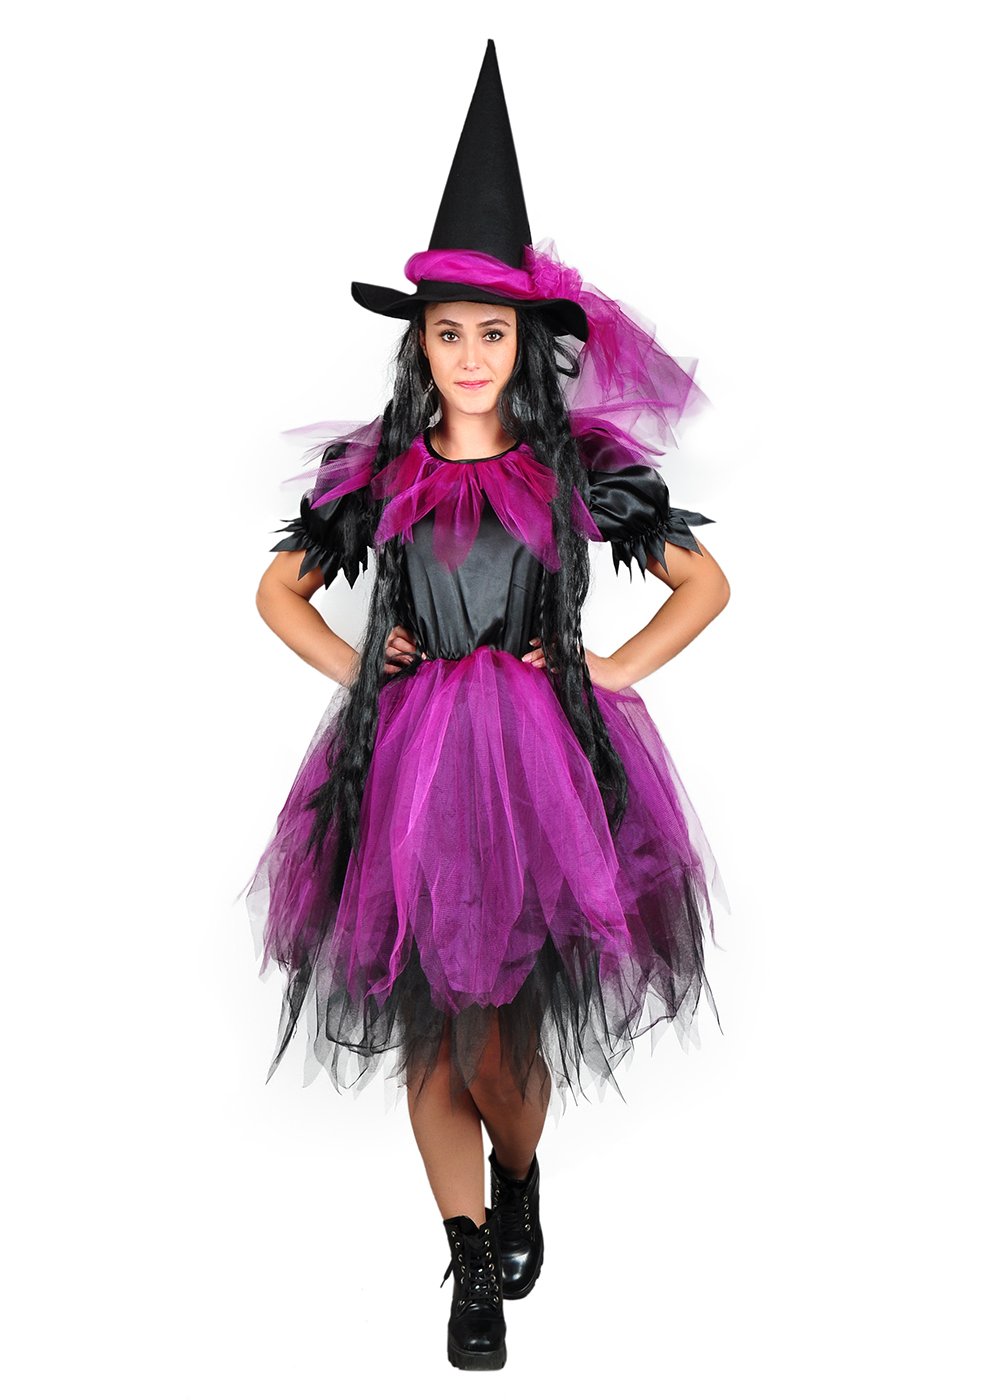 Mor Renk Cadı Kostümü, Tüllü Yetişkin Kadın Cadı Kostümü, Hızlı Kargo